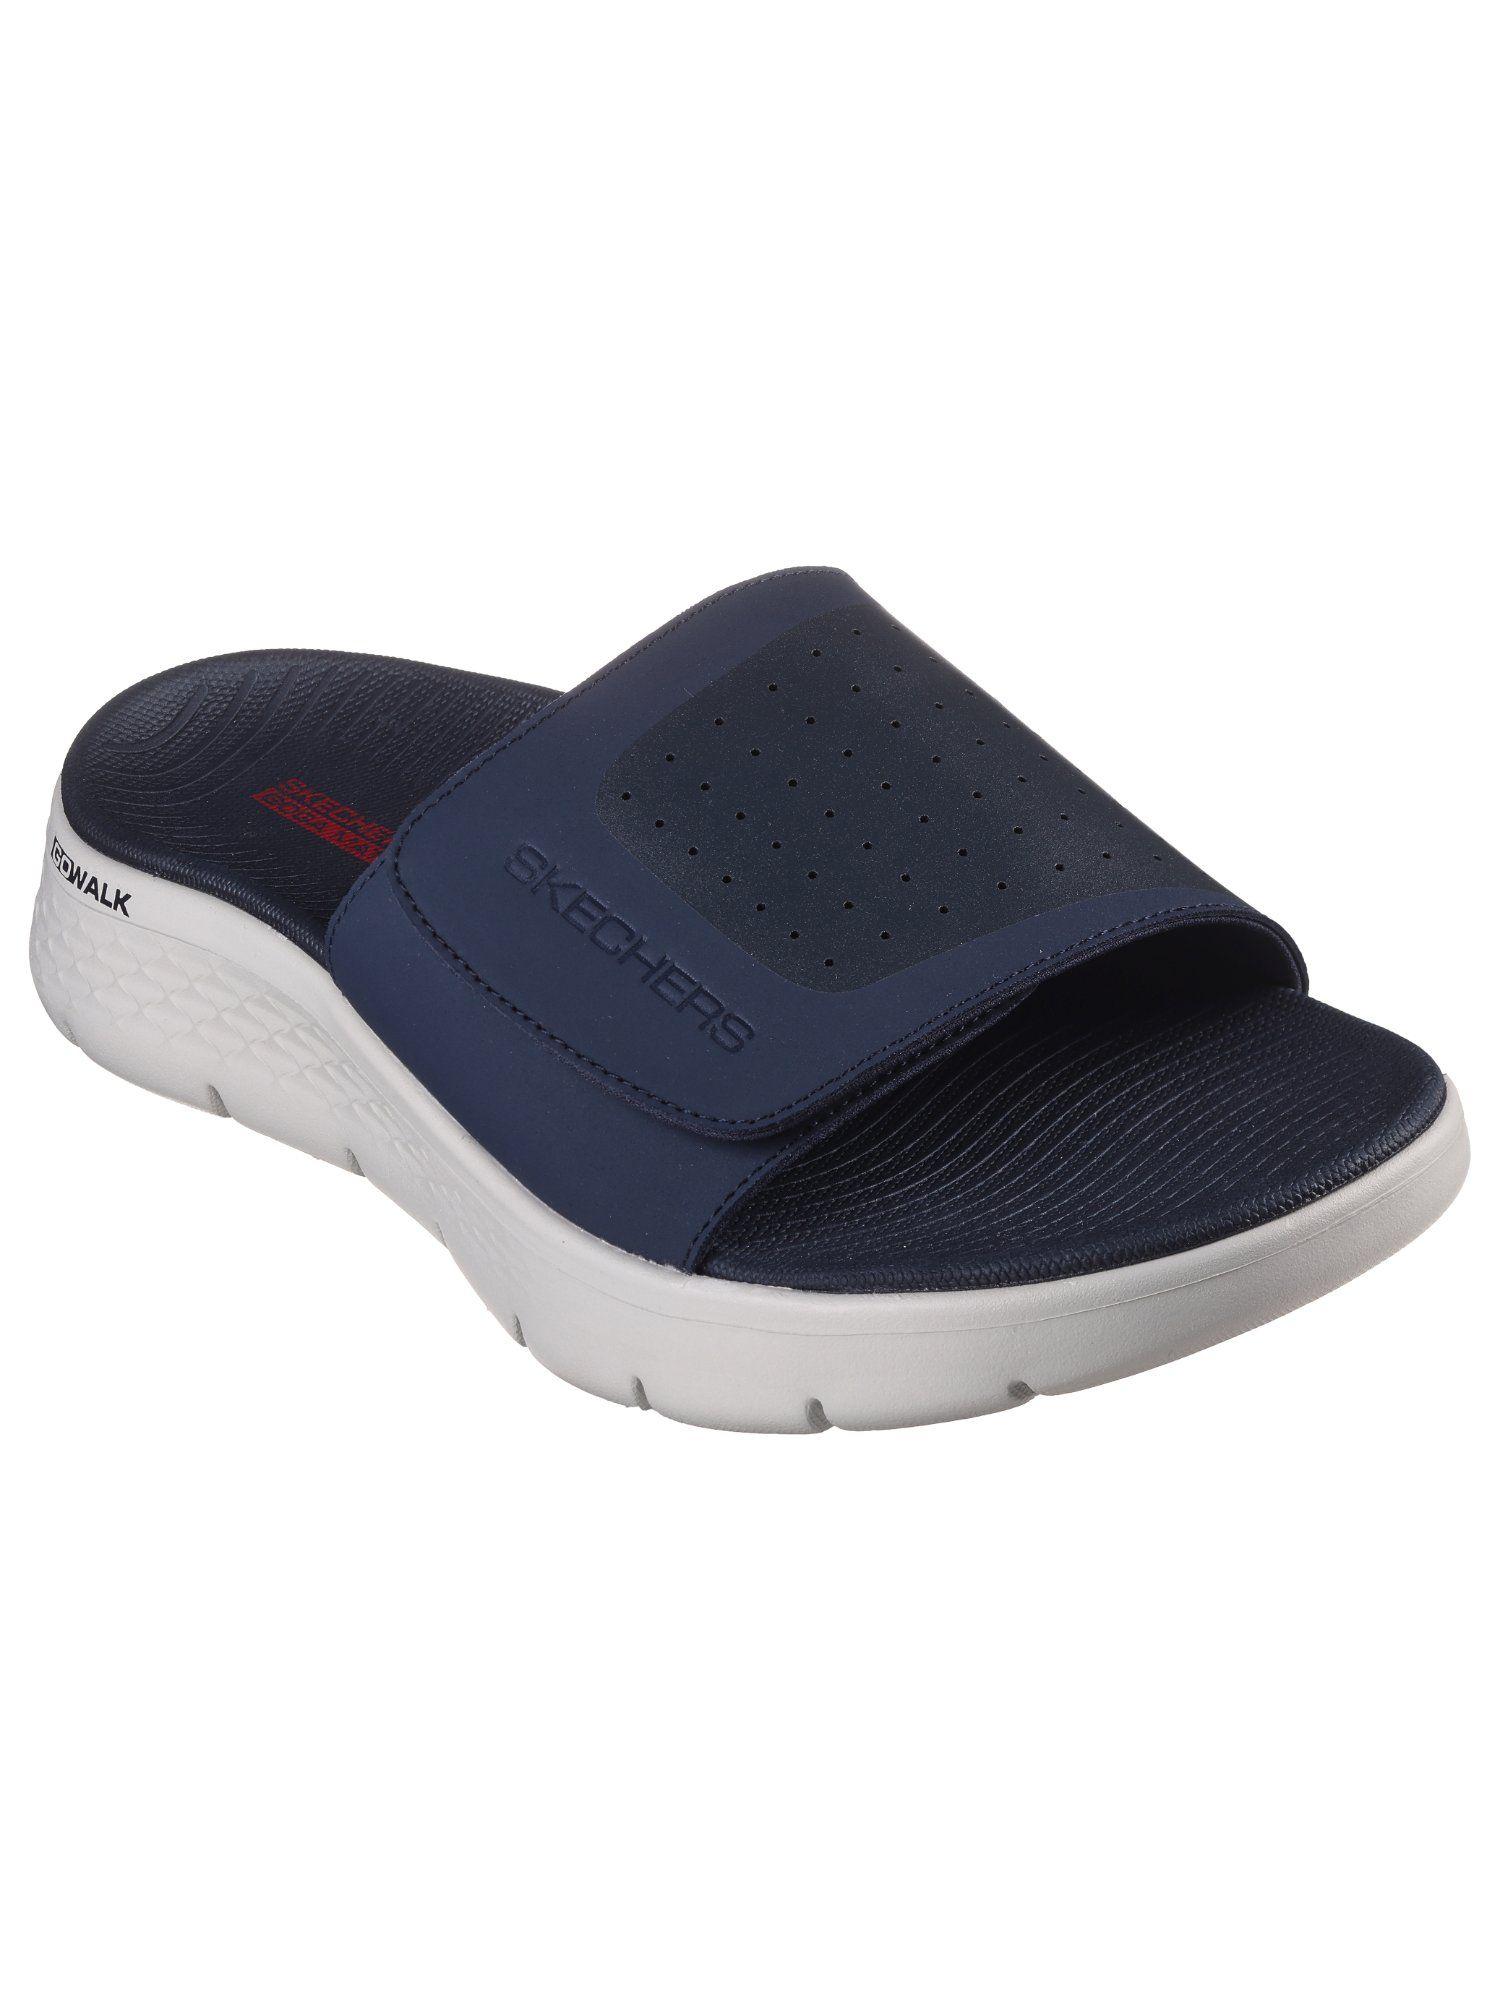 go-walk-flex-sandal-navy-blue-sliders